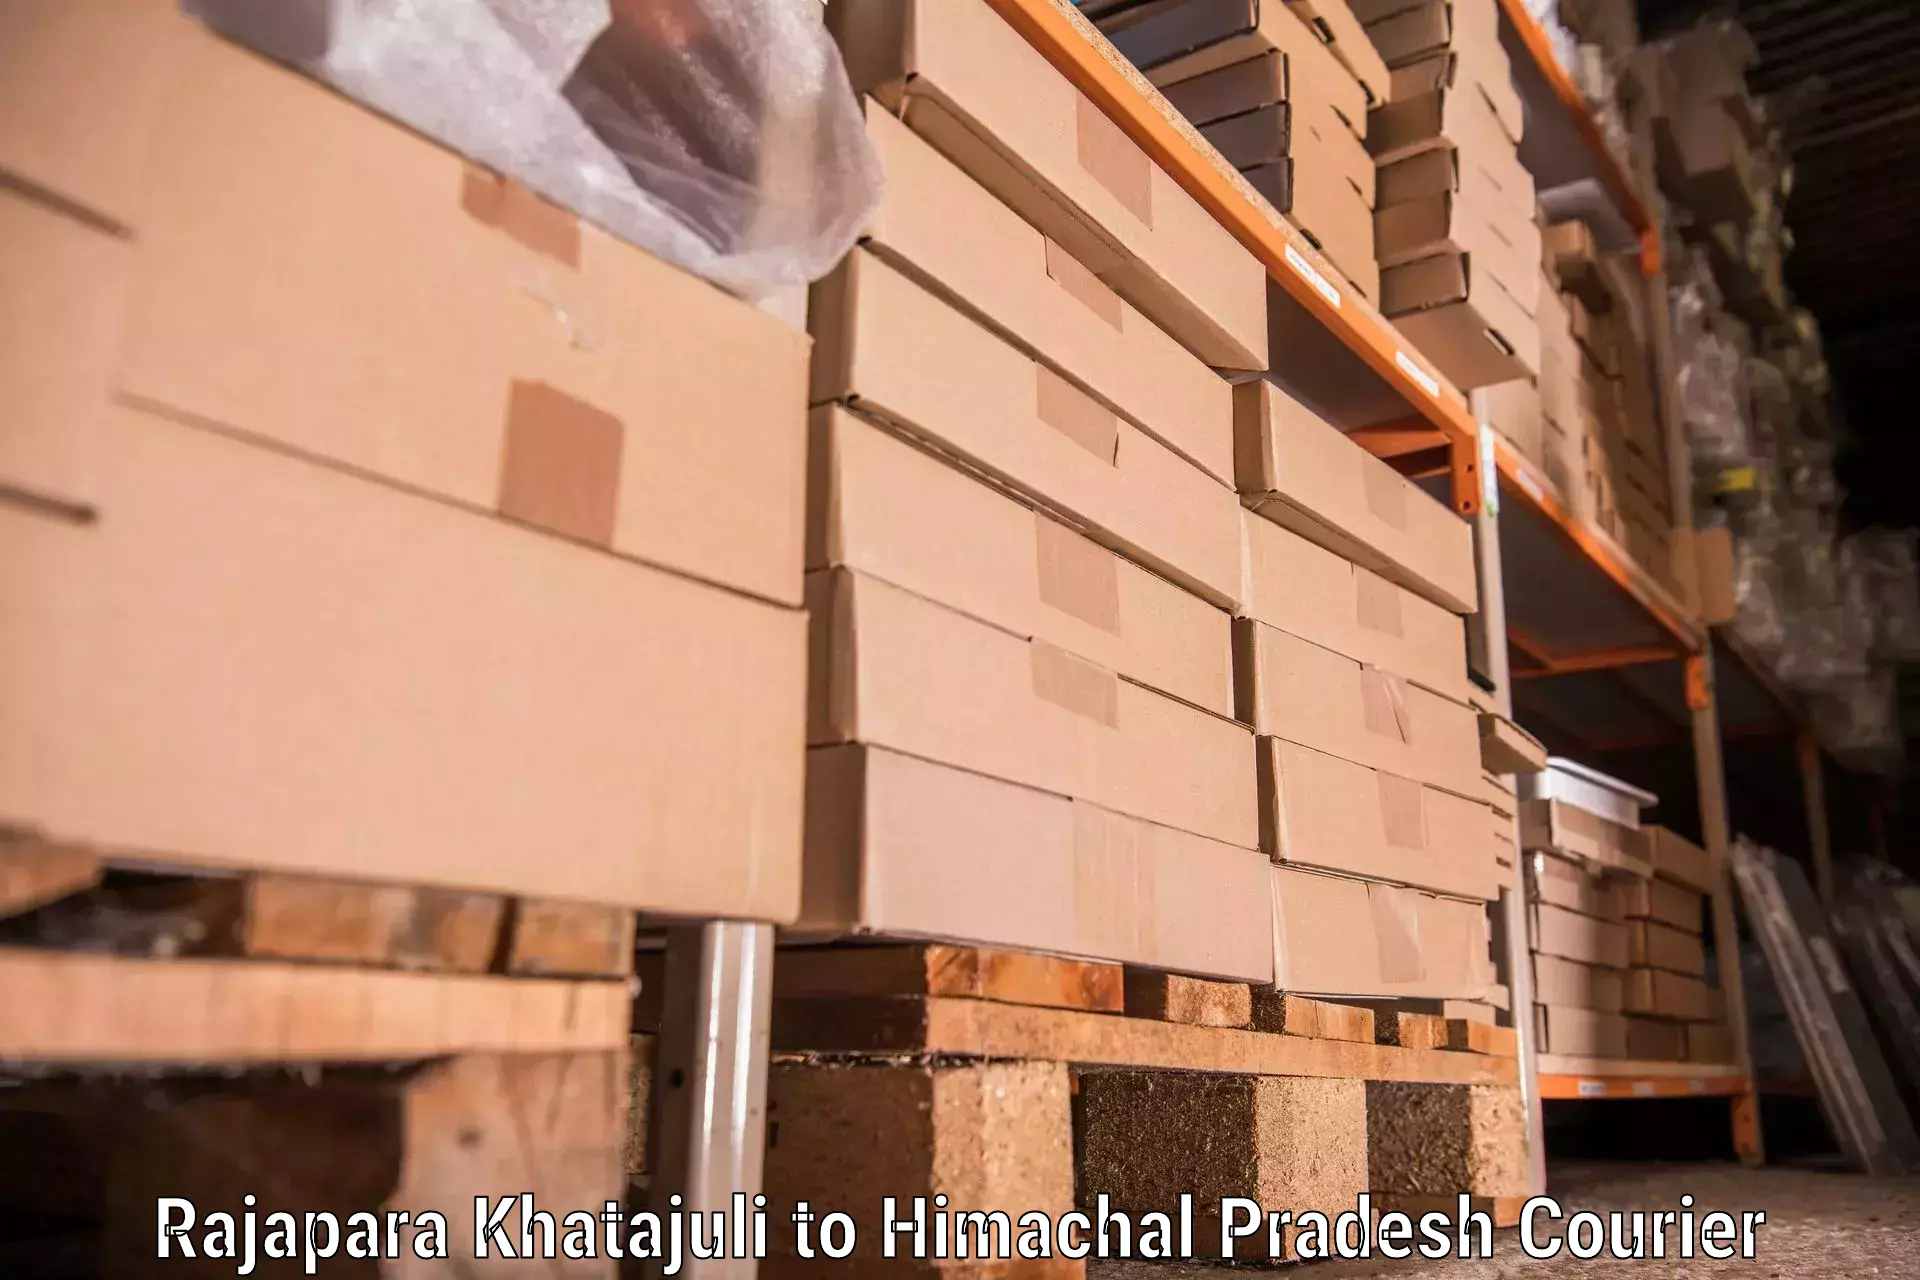 Furniture transport solutions Rajapara Khatajuli to Manali